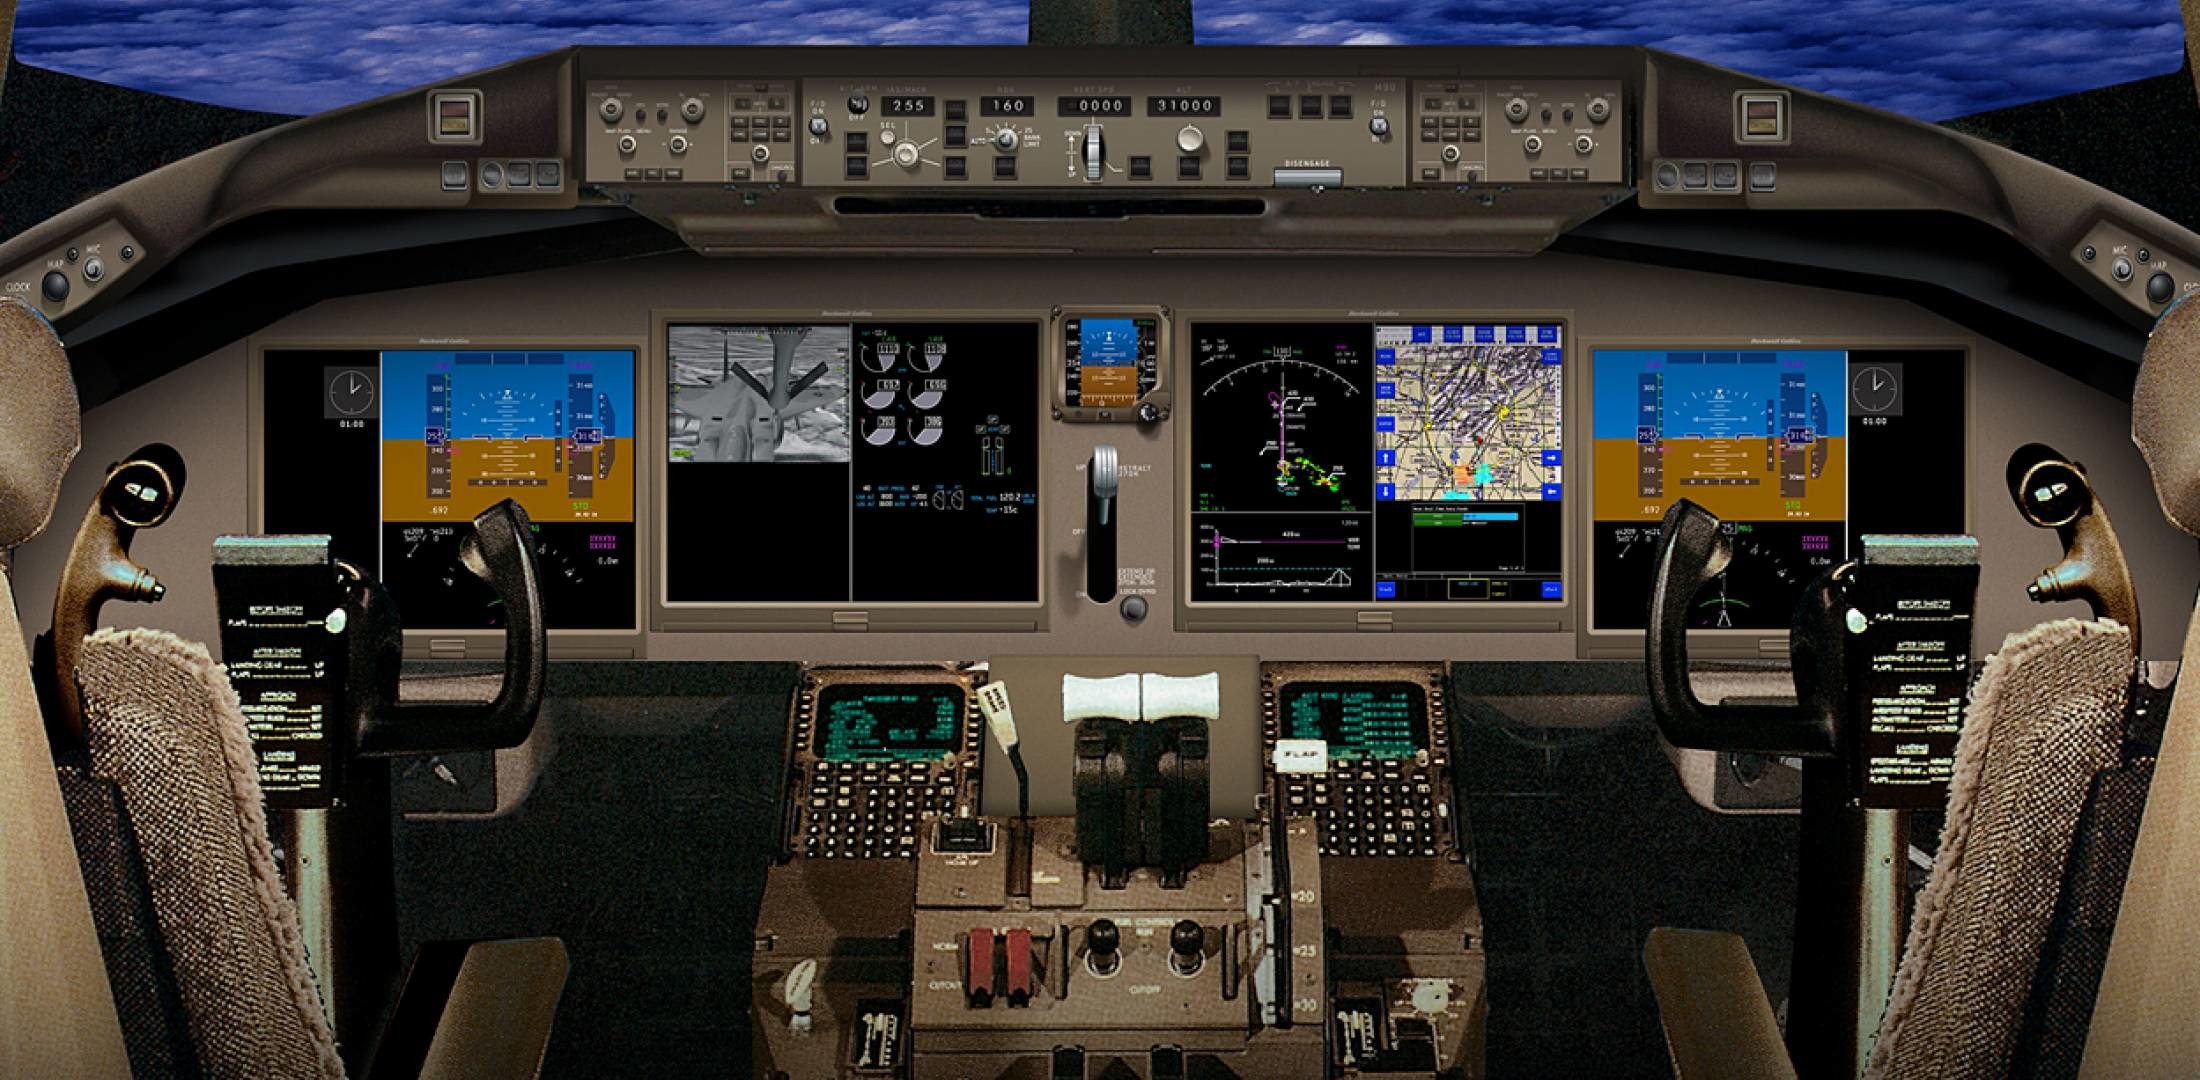 2200x1080 Barack In A Boeing 787 Cockpit Jpg Wikimedia Mons